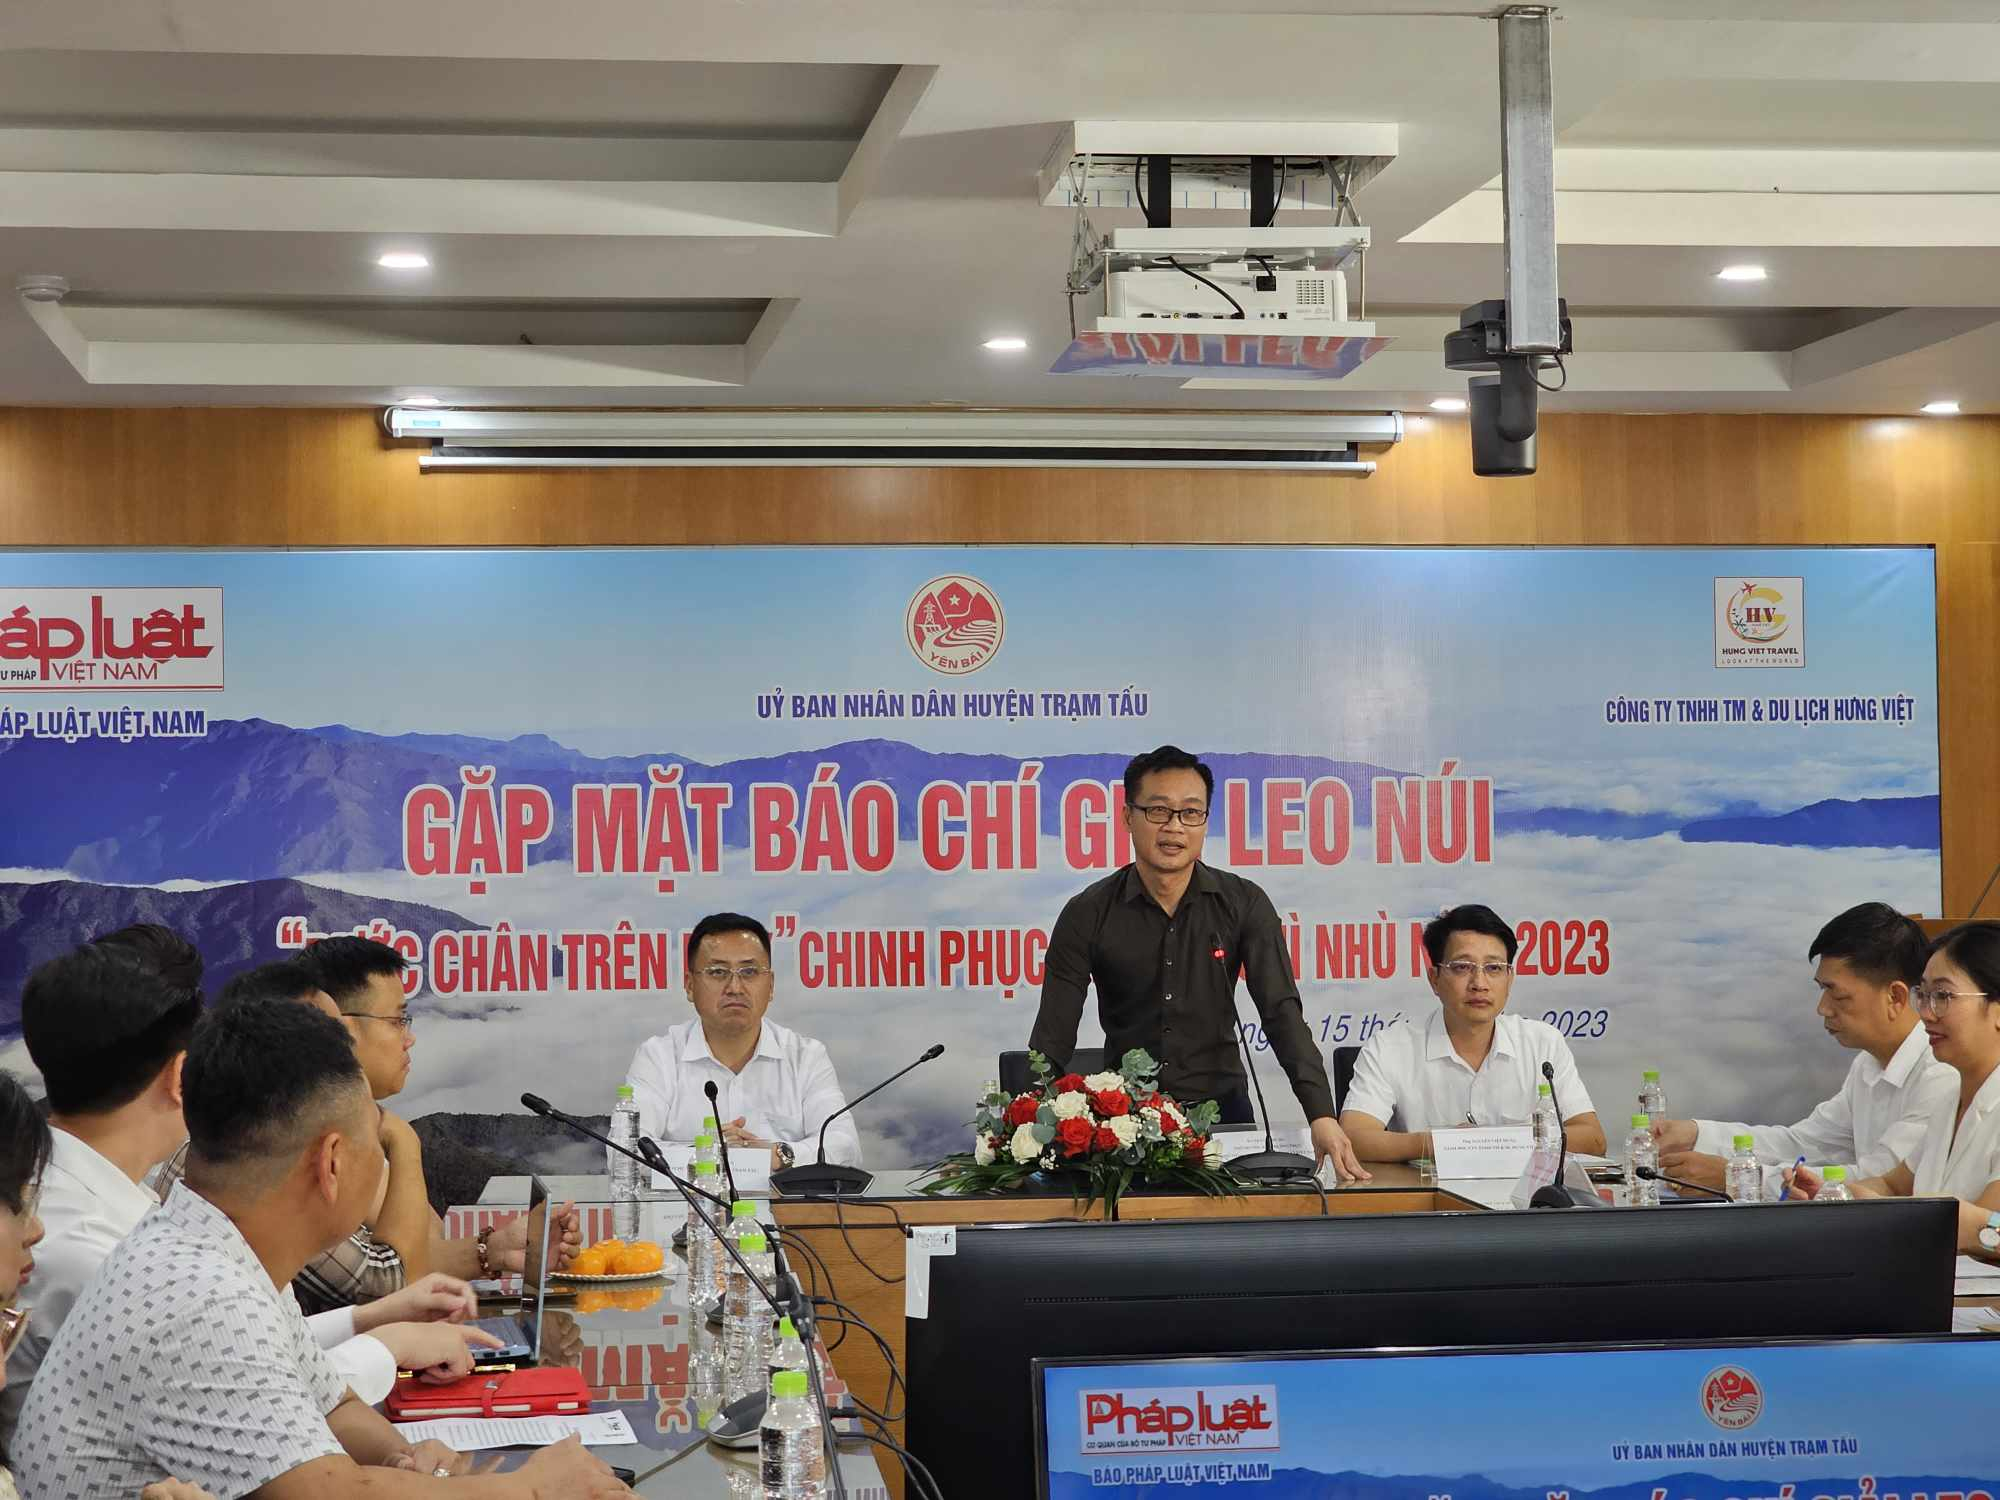 Nhà báo Trần Ngọc Hà, Phó tổng biên tập Báo Pháp luật Việt Nam phát biểu khai mạc buổi gặp mặt các cơ quan báo chí.